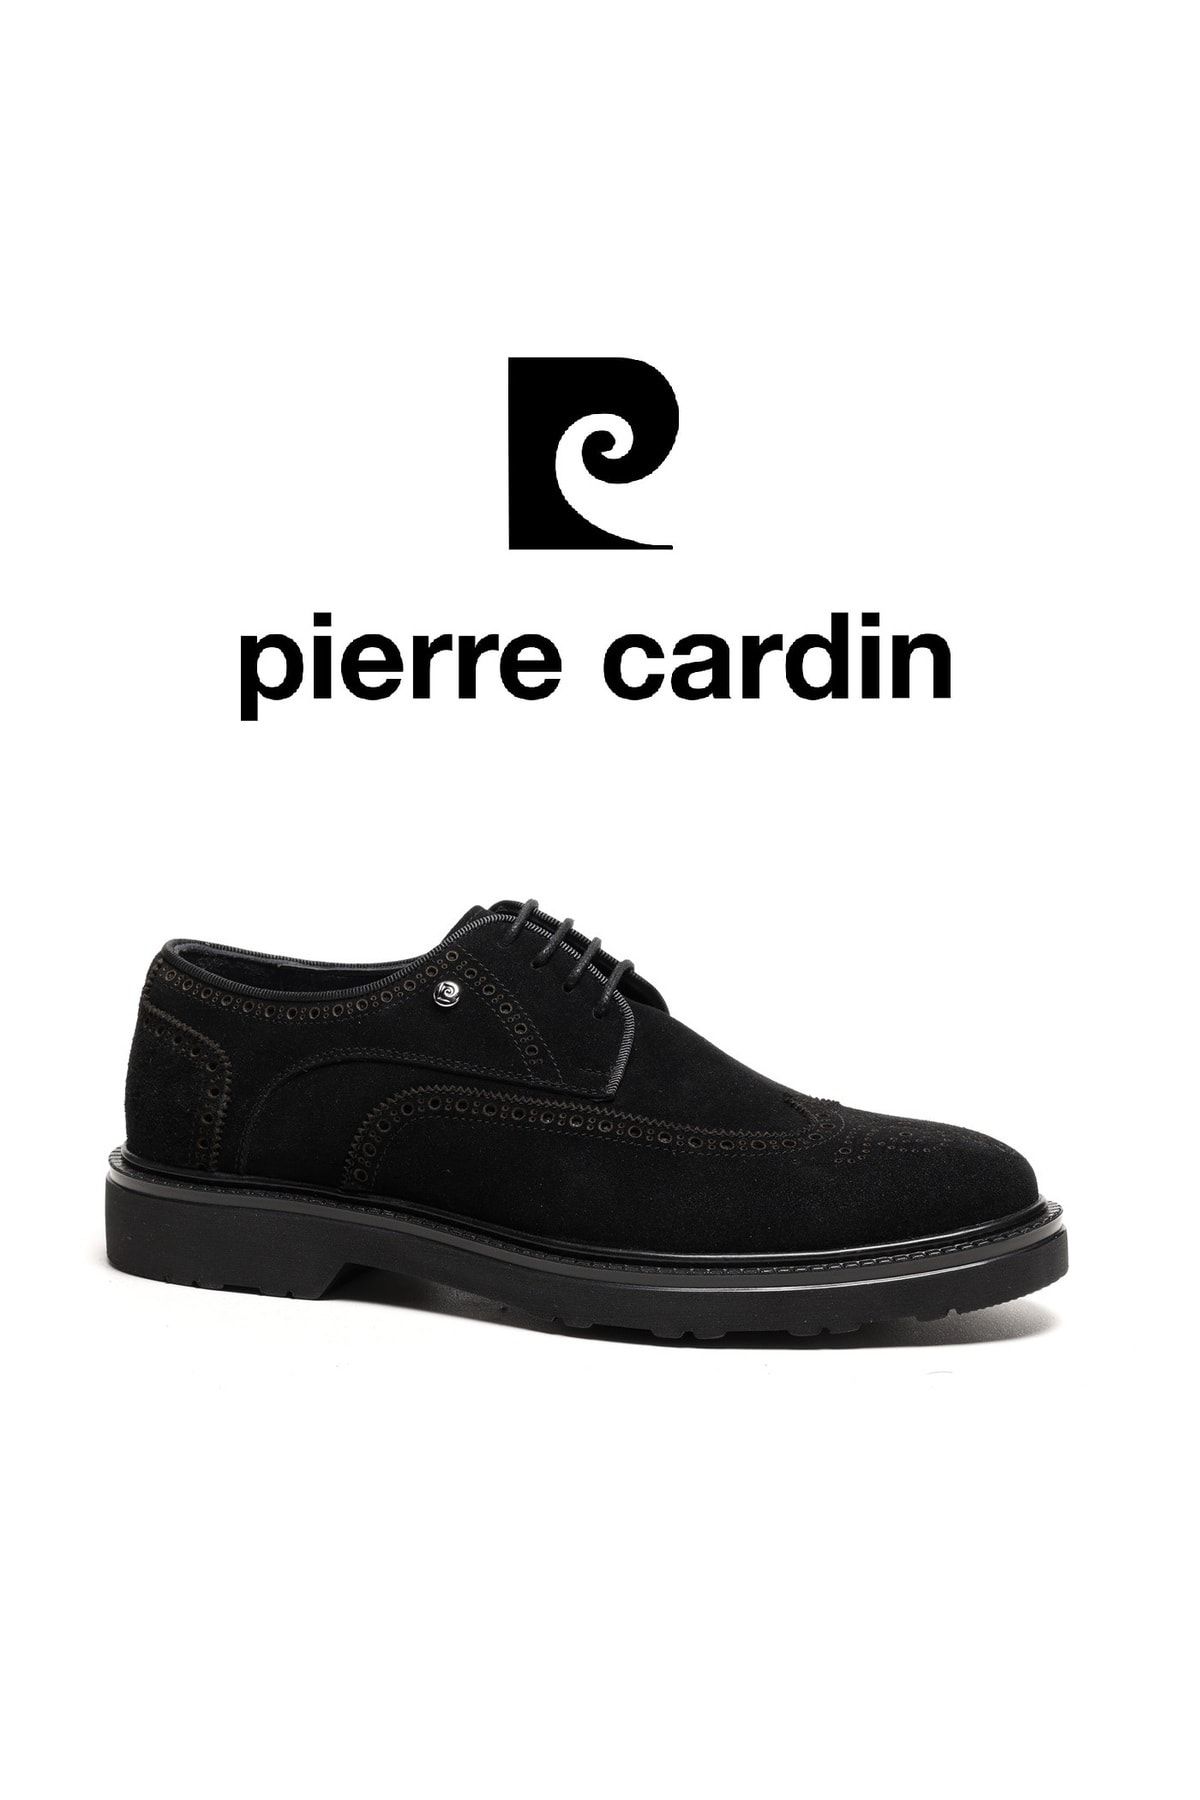 Pierre Cardin Hakiki Deri Siyah Süet Erkek Klasik Ayakkabı